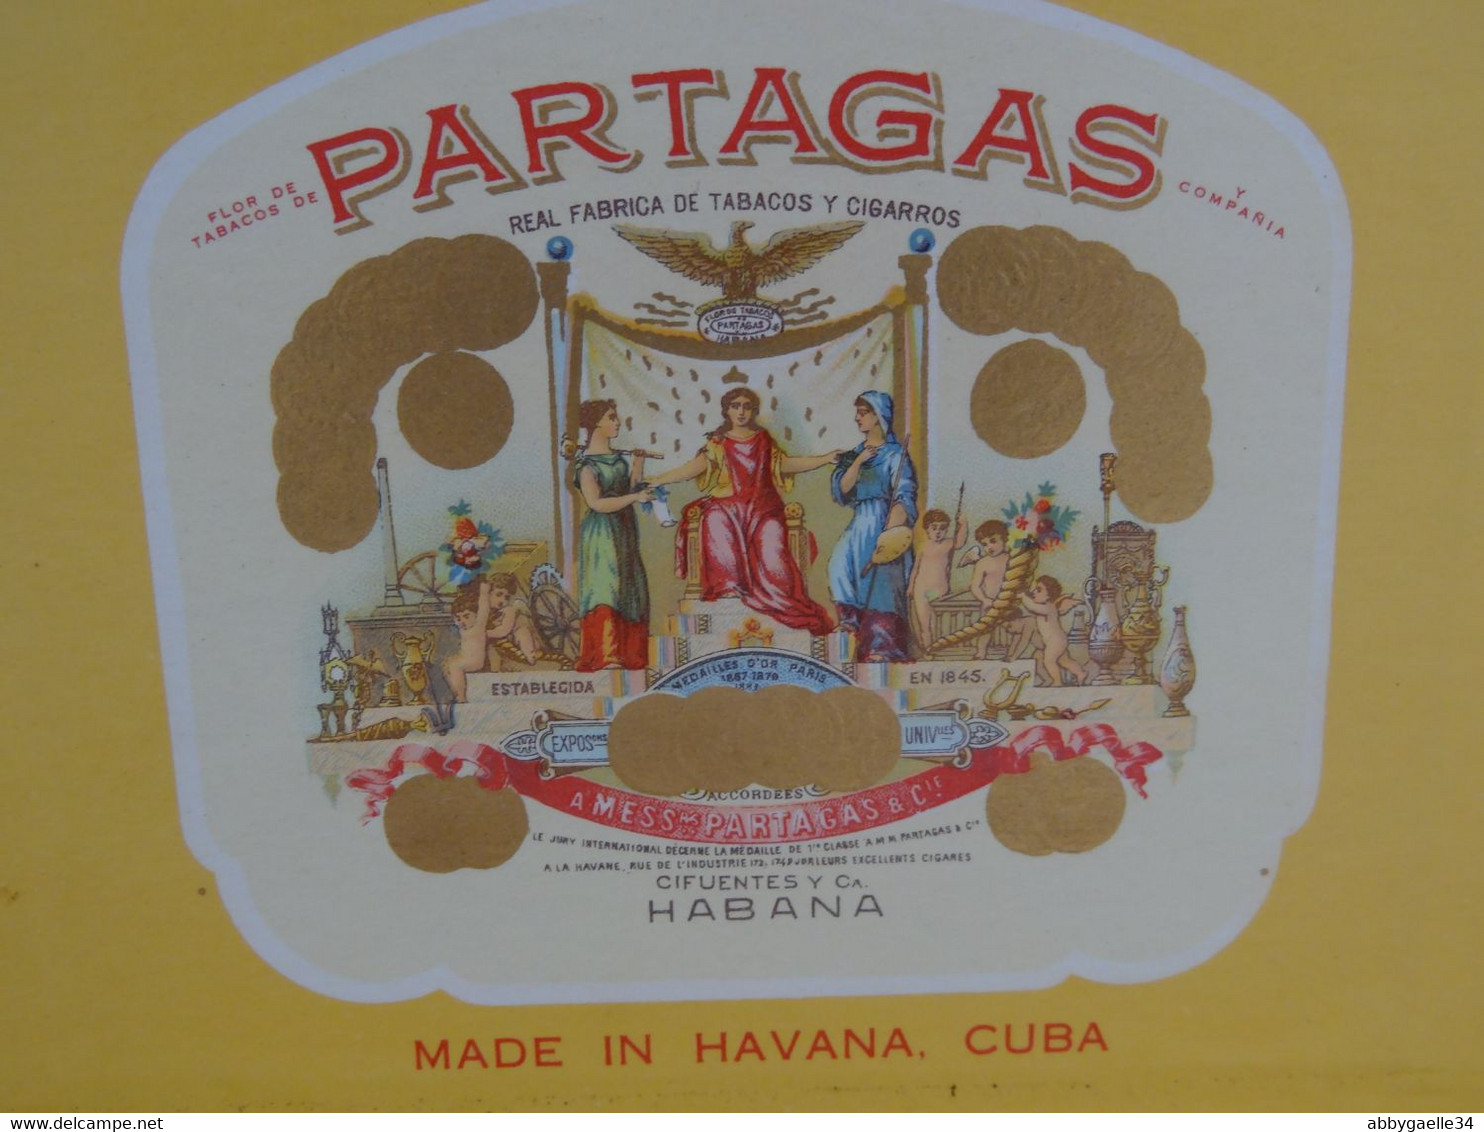 * Lot de 2 boîtes de tabac vides bois * Partagas Flor de Tabacos, Quintero y Hno, Cienfuegos, Cuba Havane Habana (lot 3)